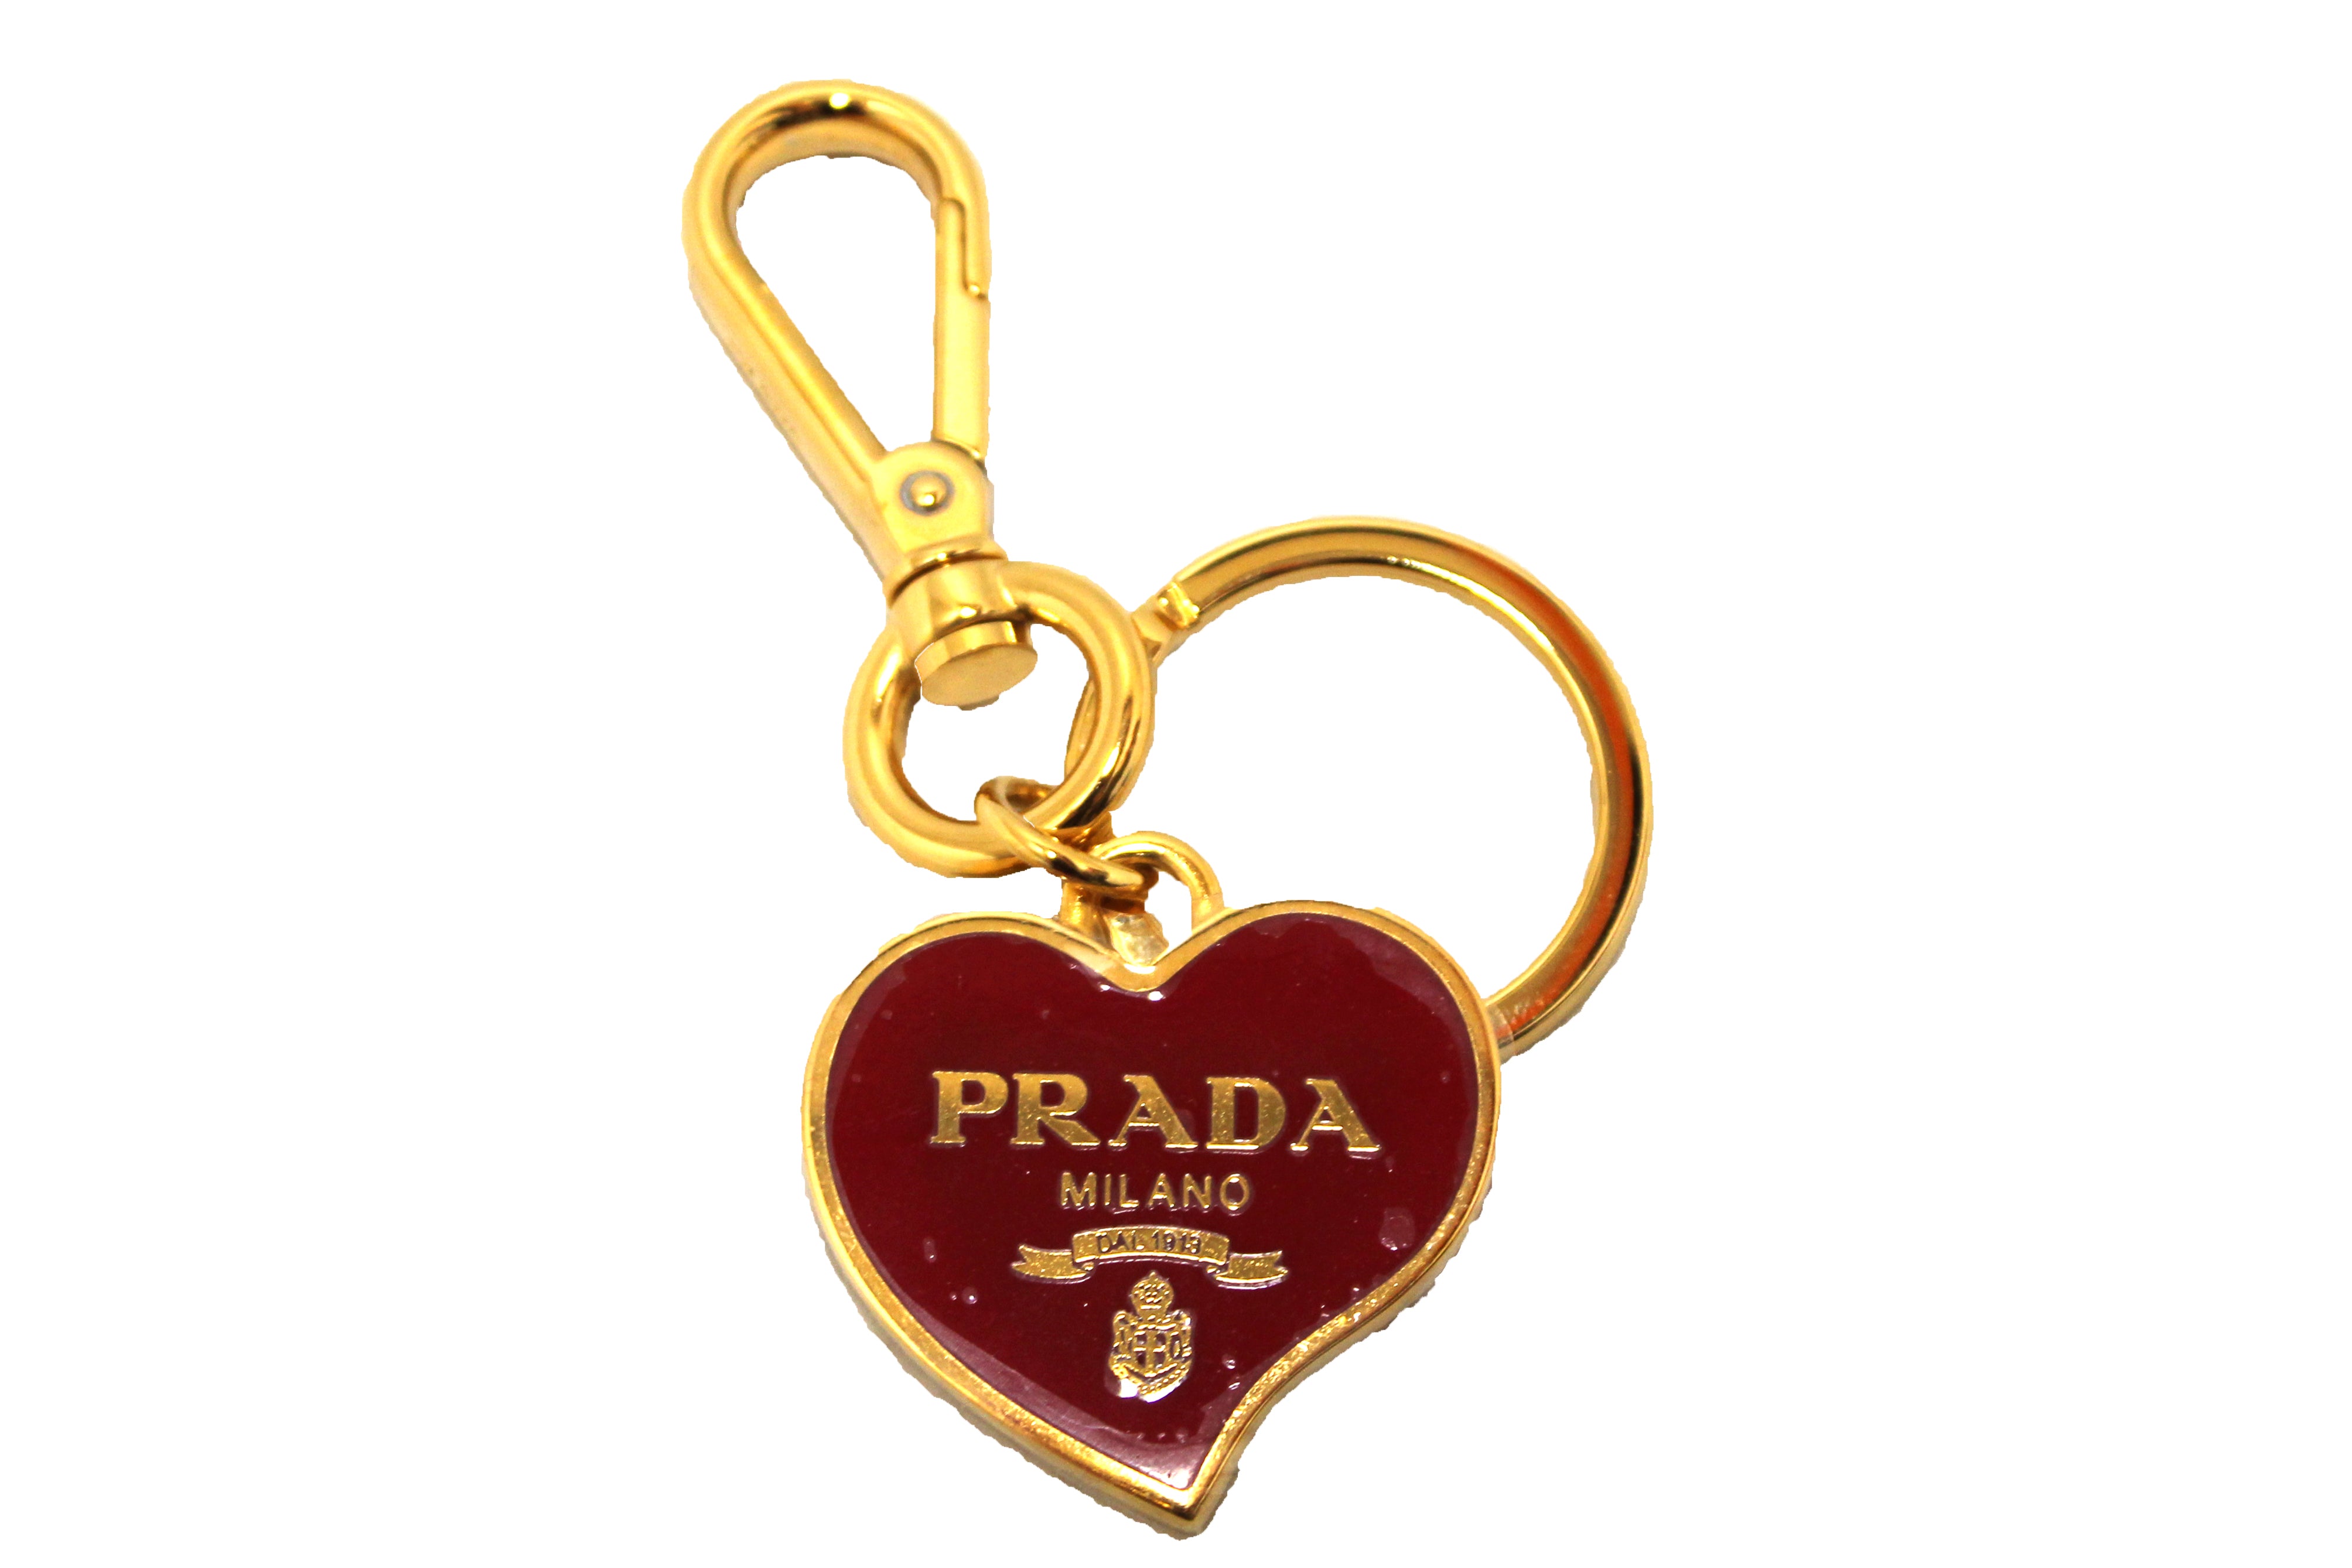 Prada Logo Padlock and Key Set Cadena Lock Bag Charm 826pr91